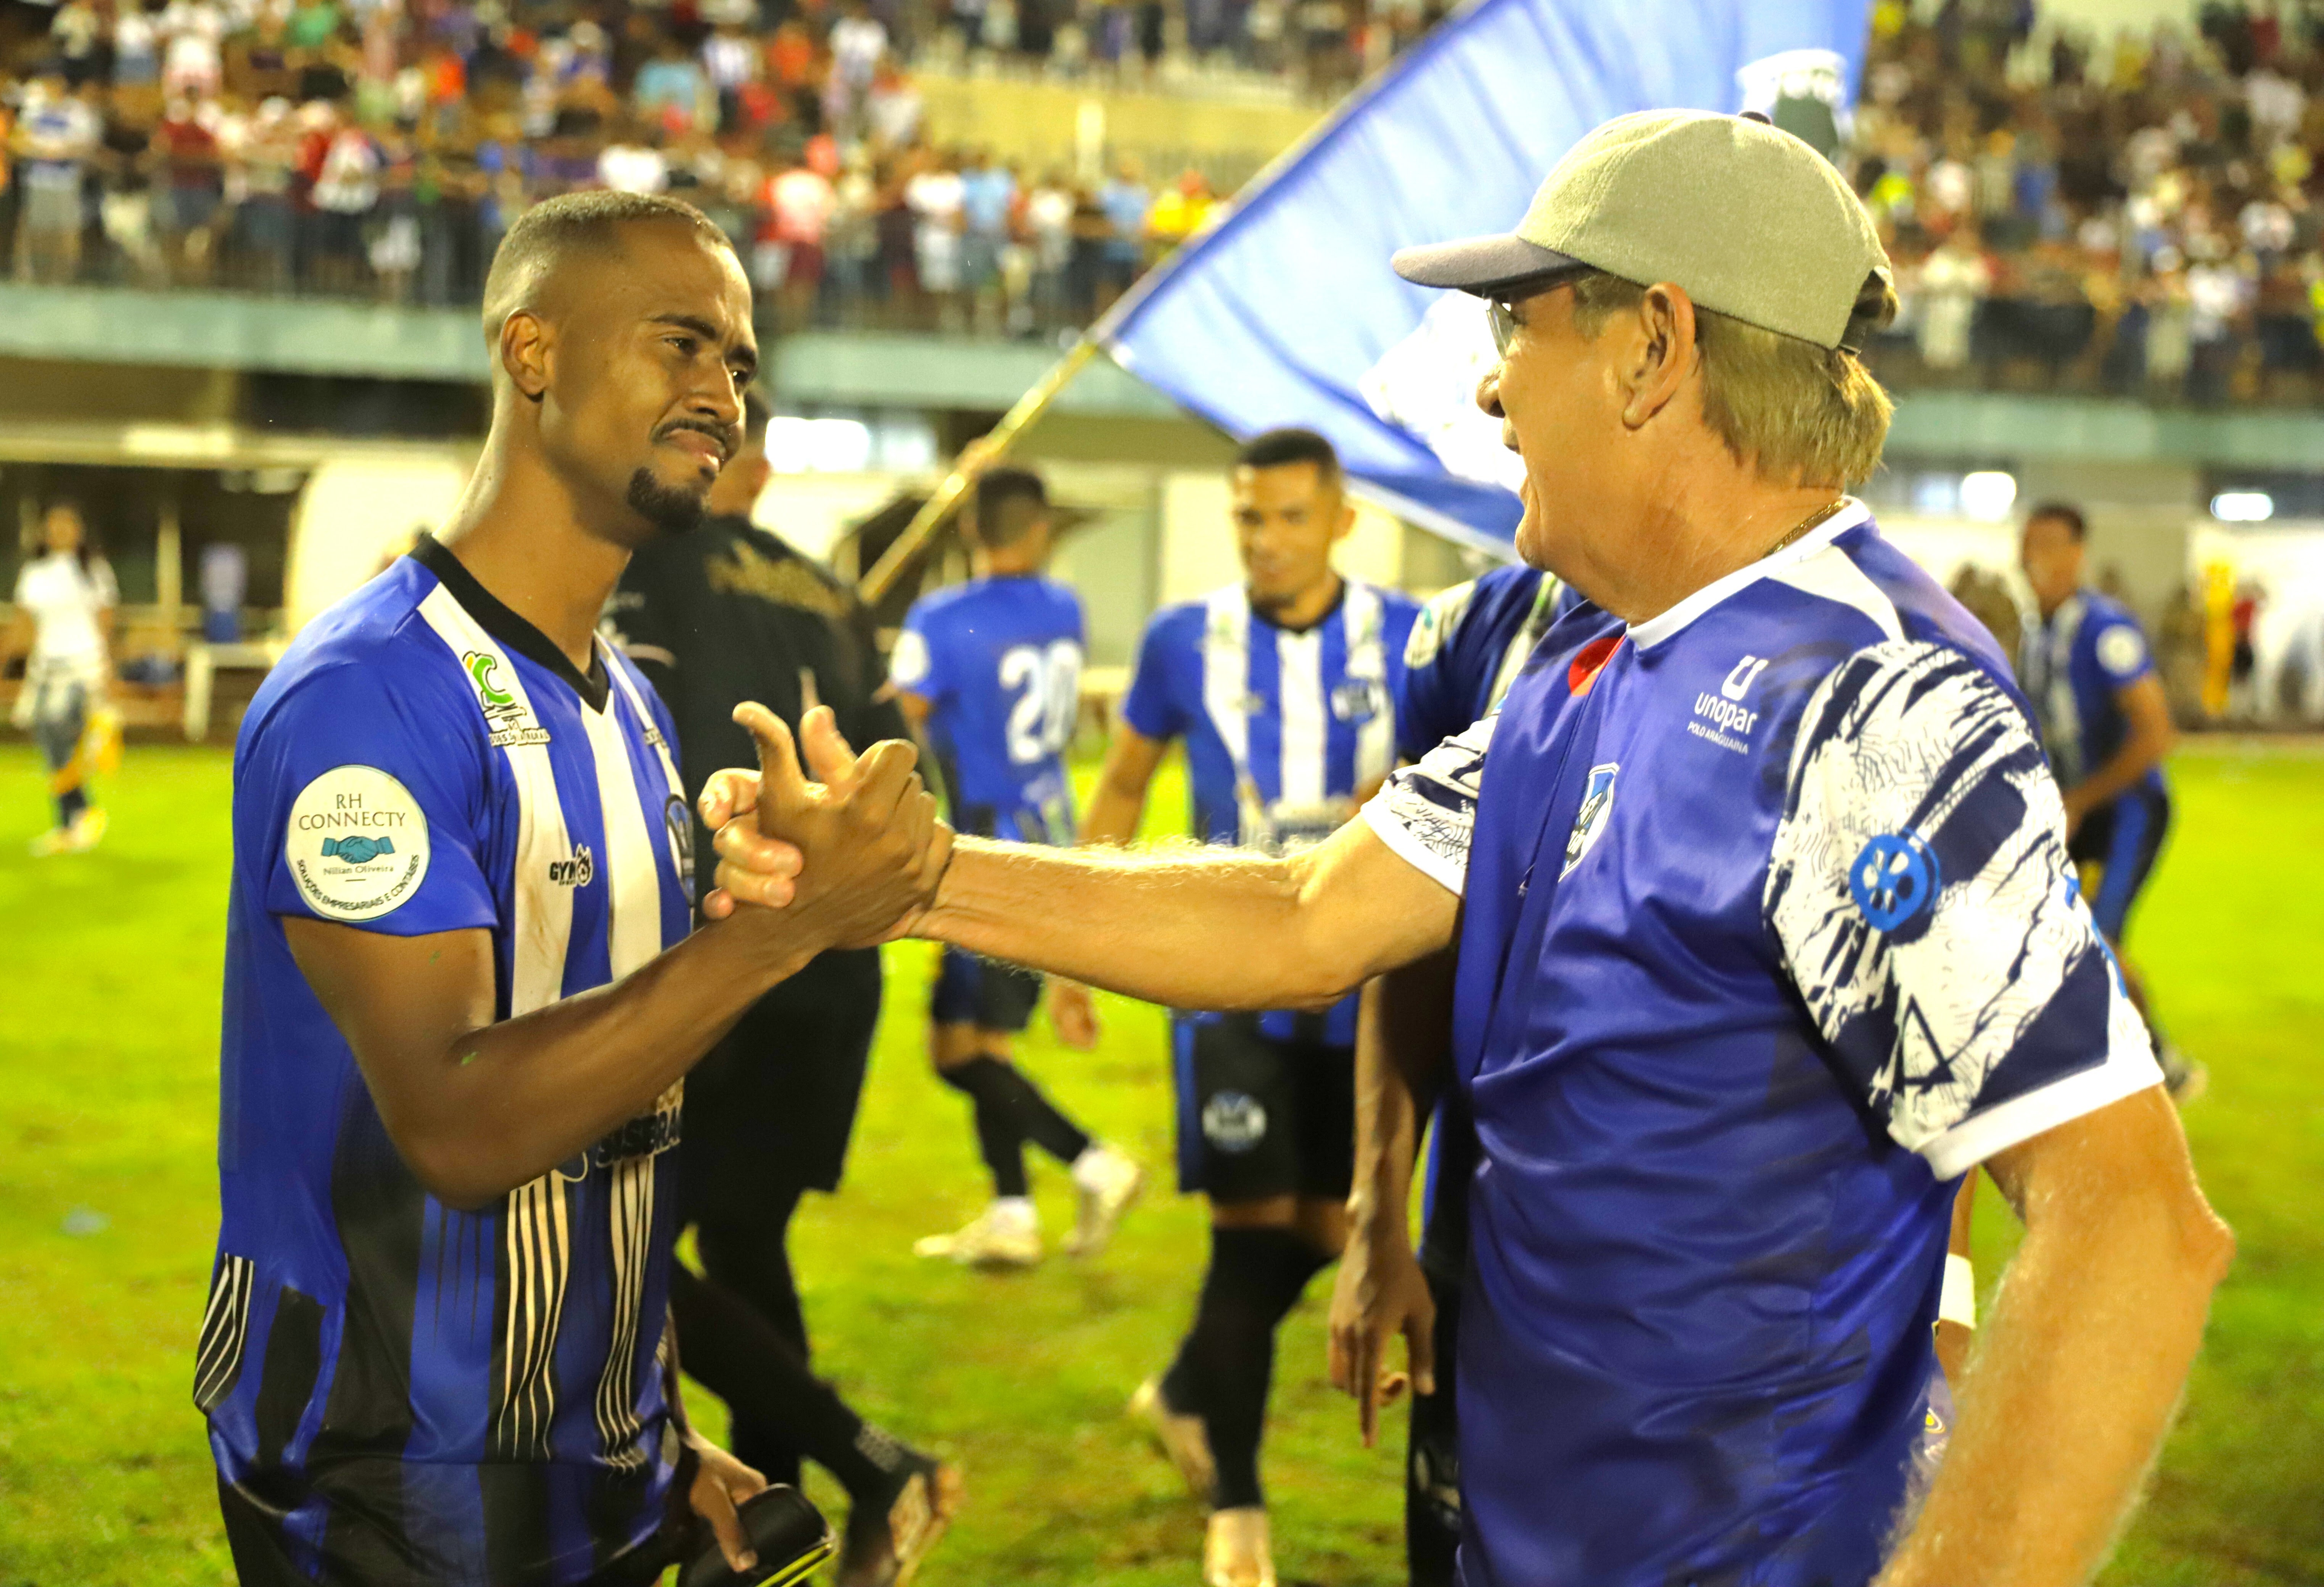 “Araguaína abraçou o União. E vimos aqui não só torcida do União, mas do Tourão também. Eu acho que nós temos que enaltecer essa vitória”, disse o técnico Luiz Carlo Prima